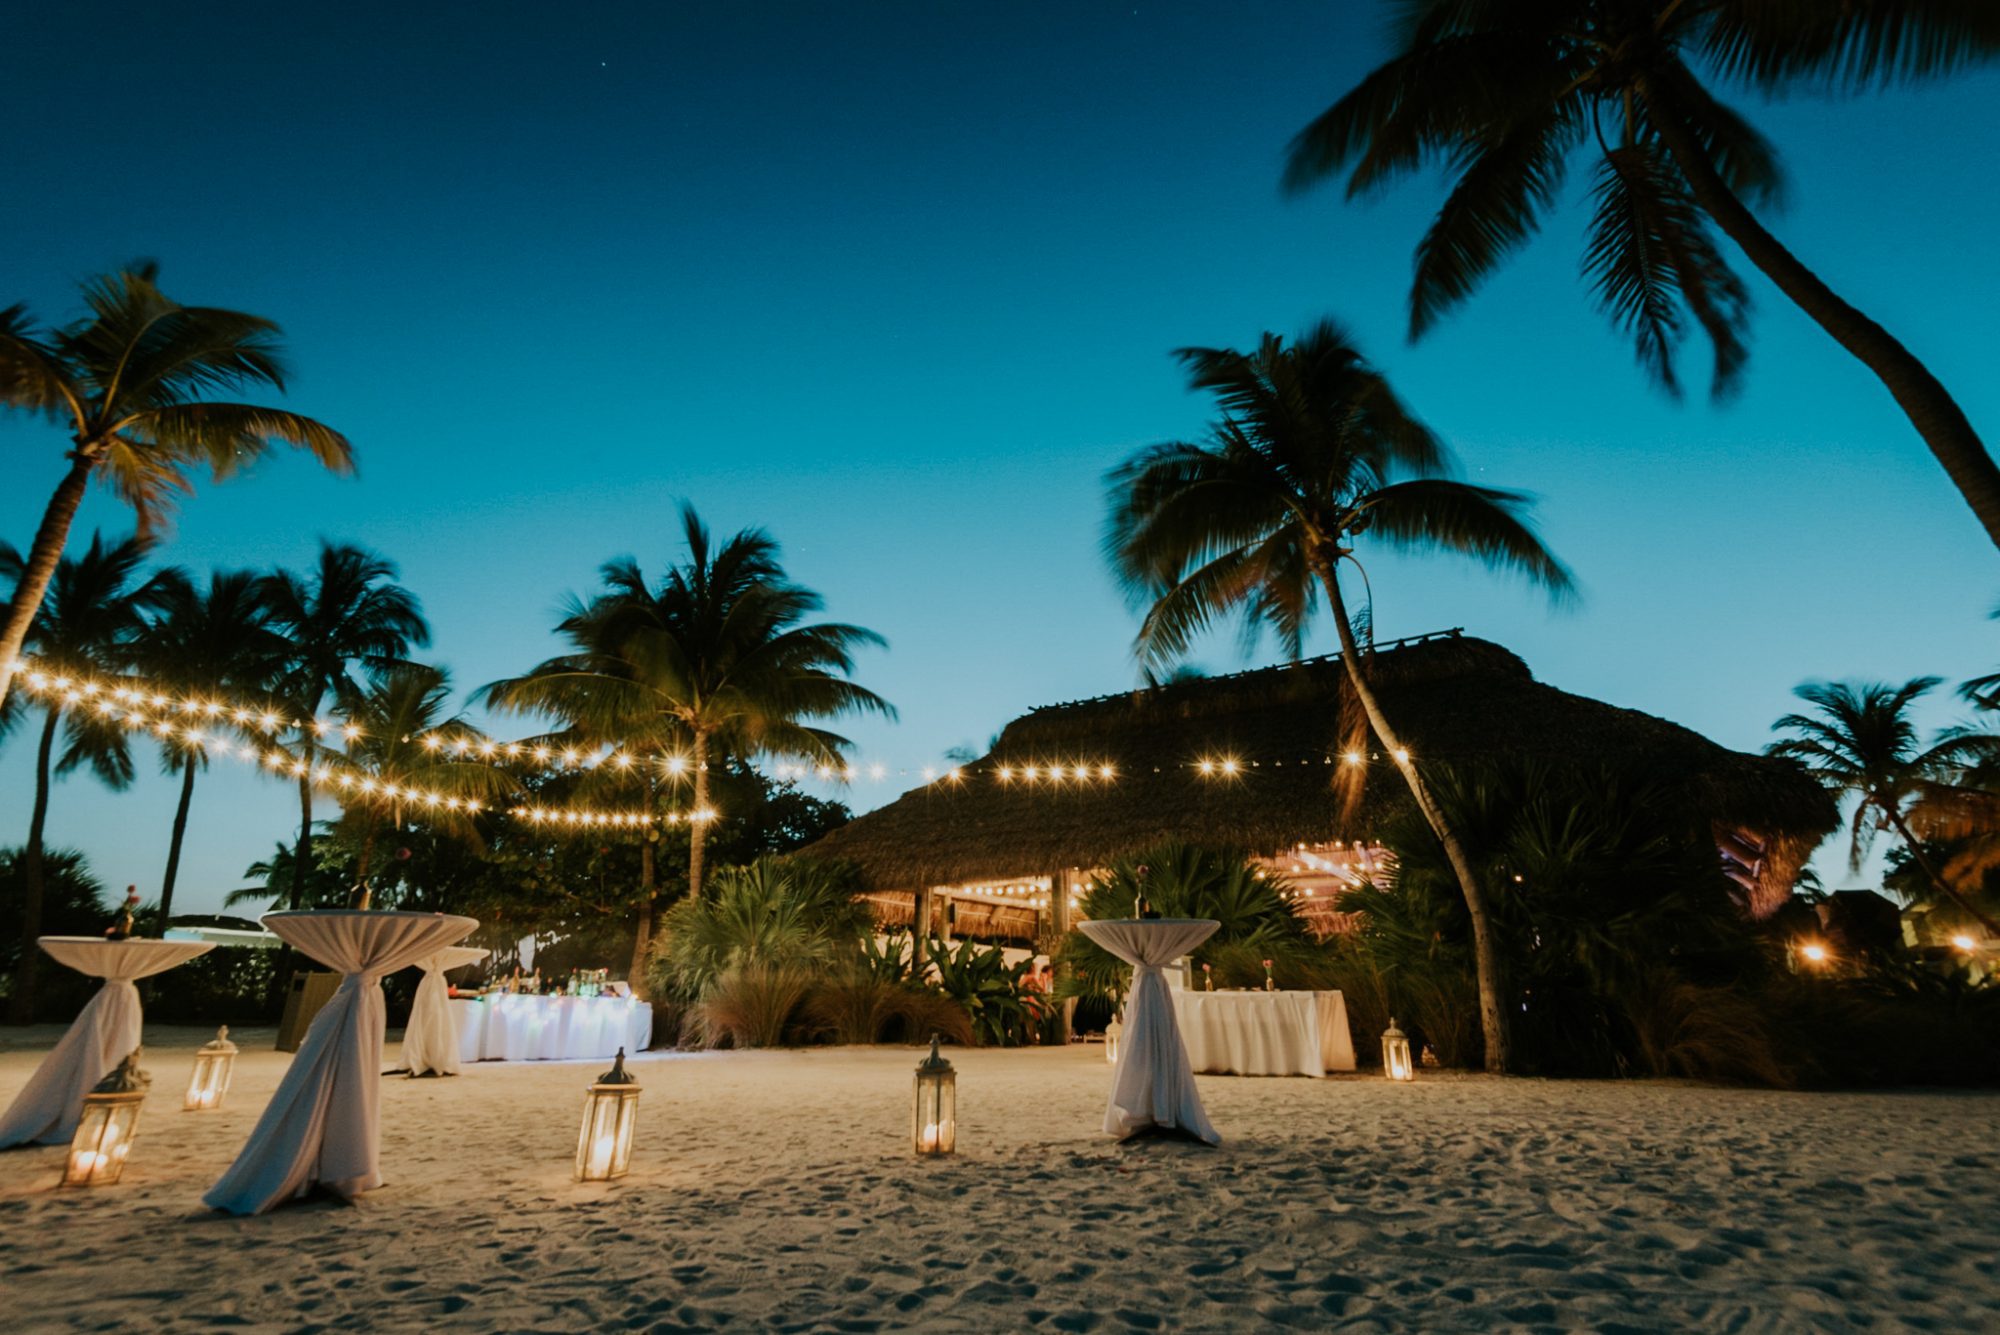 A beach wedding at dusk with candles on the sand, photographed by an Islamorada Wedding Photographer at Postcard Inn.